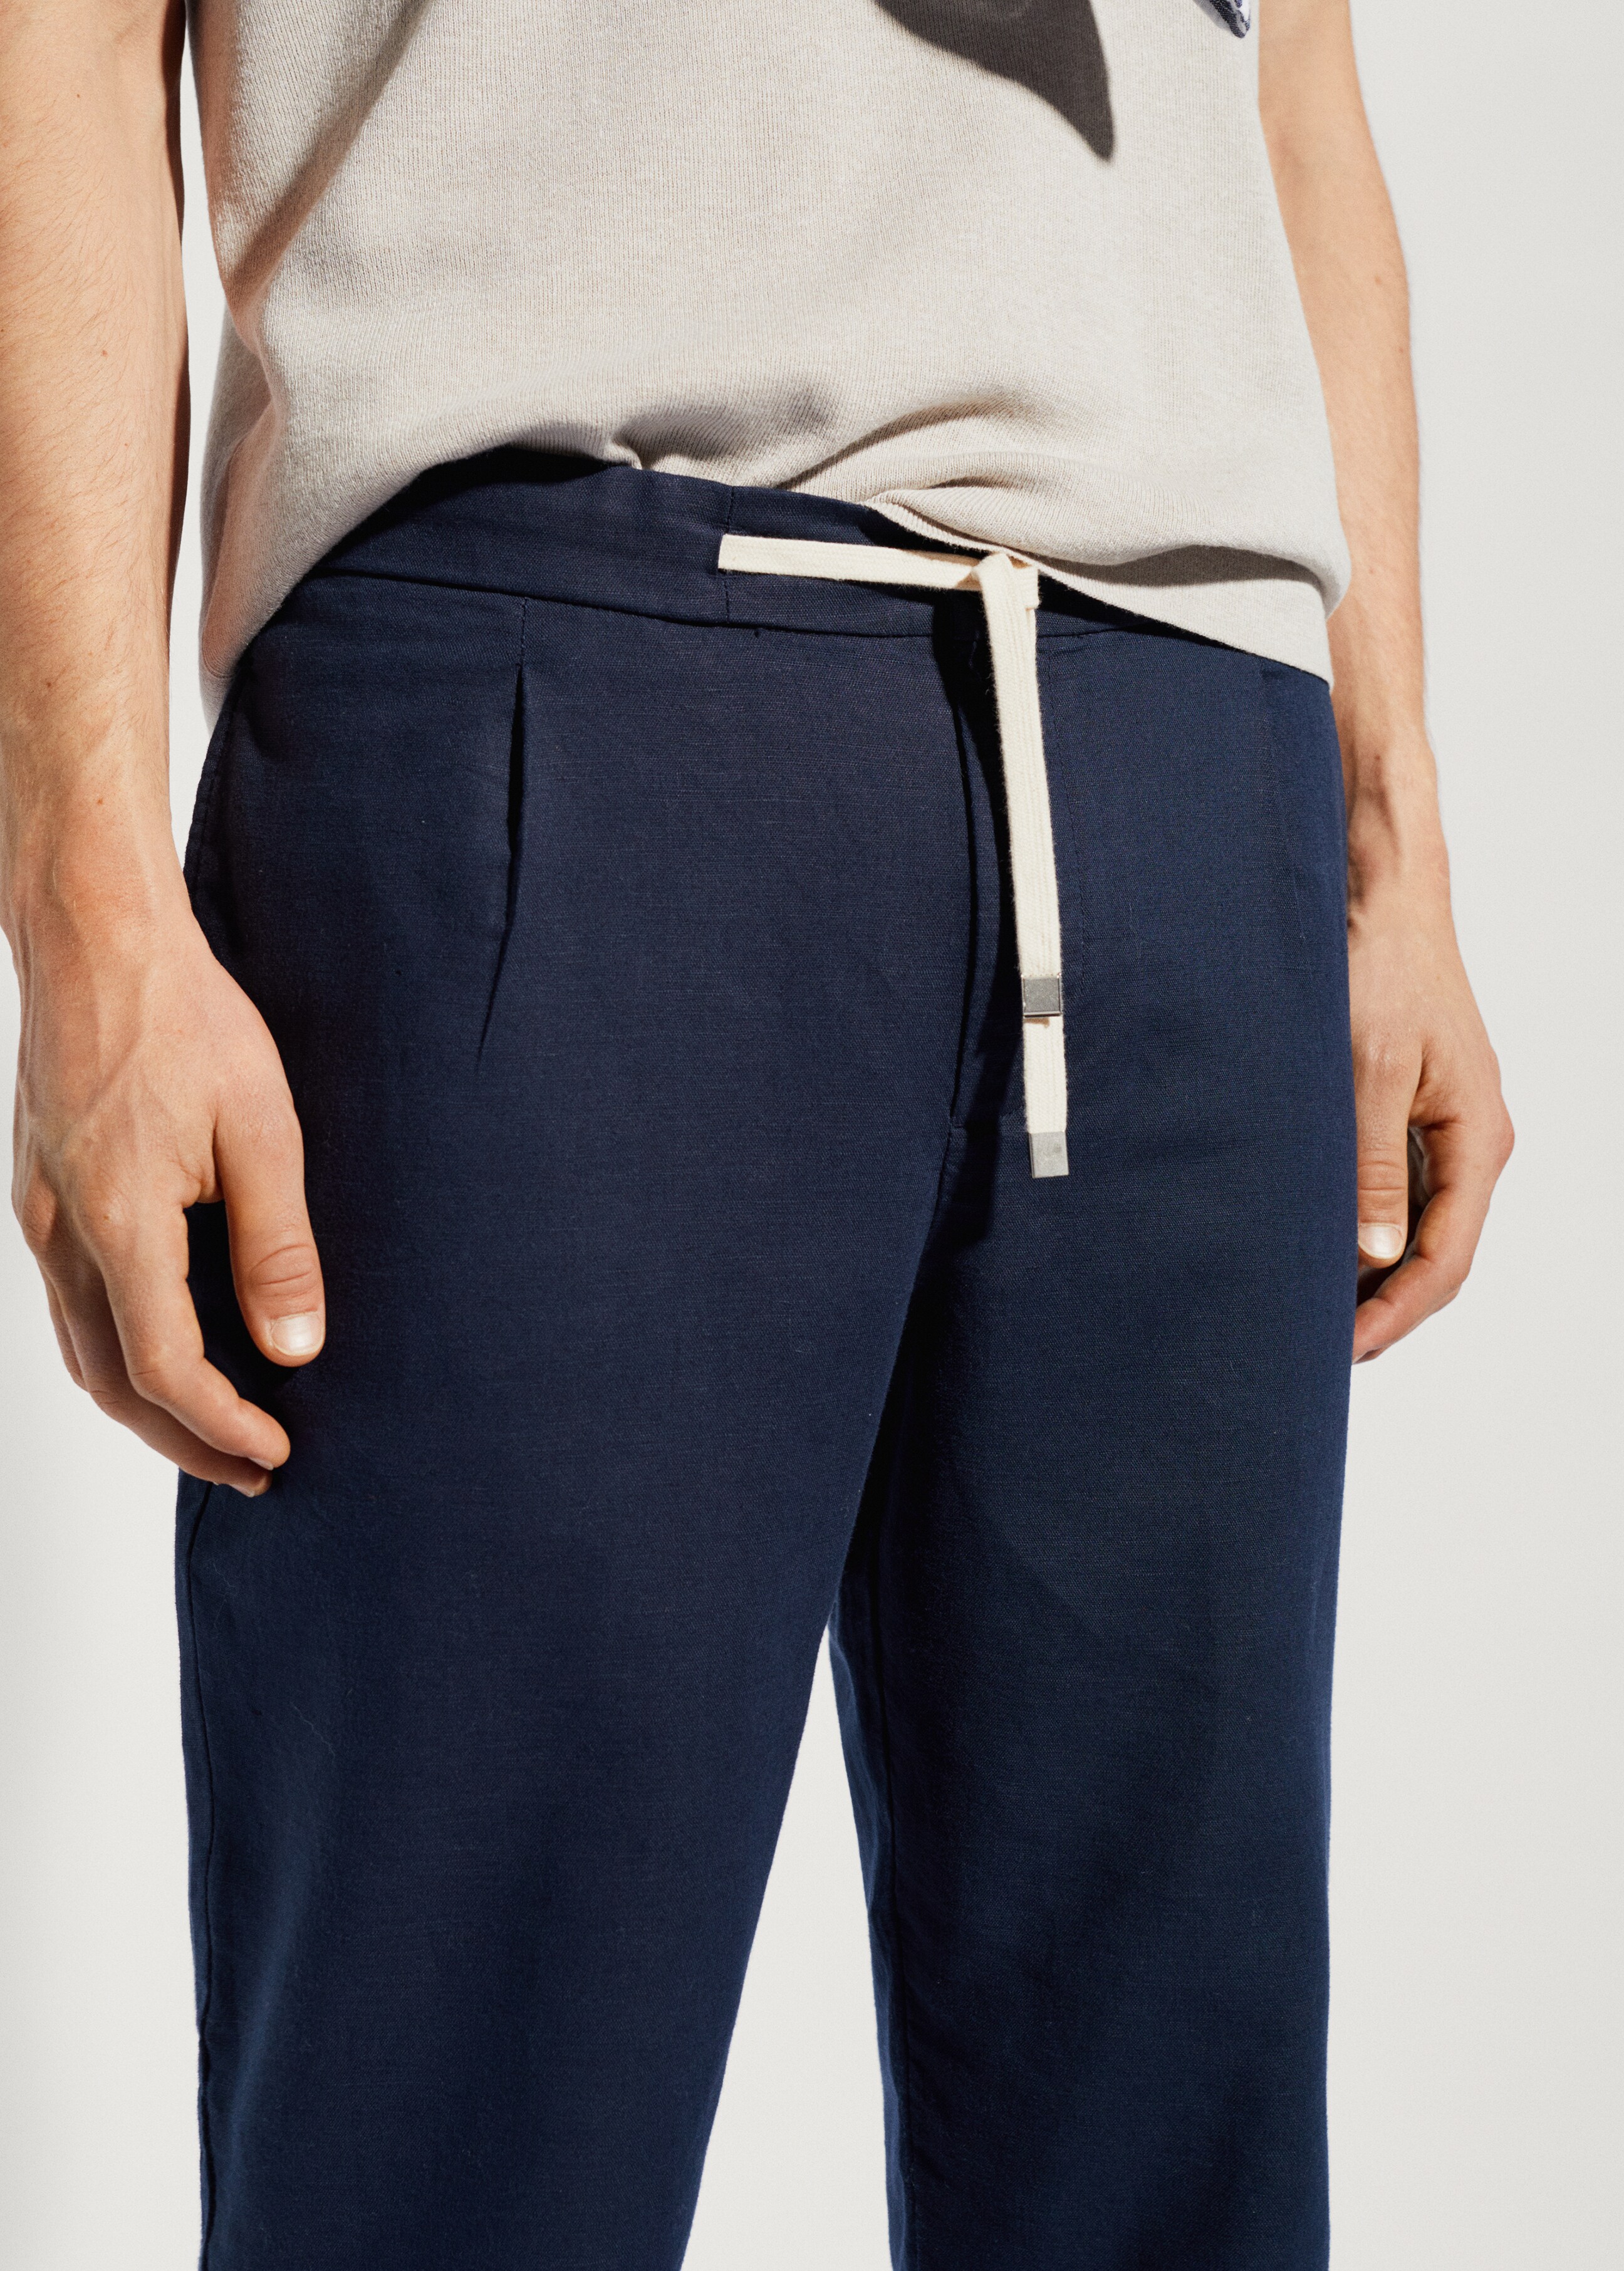 Pantalón slim fit lino cordón - Detalle del artículo 1